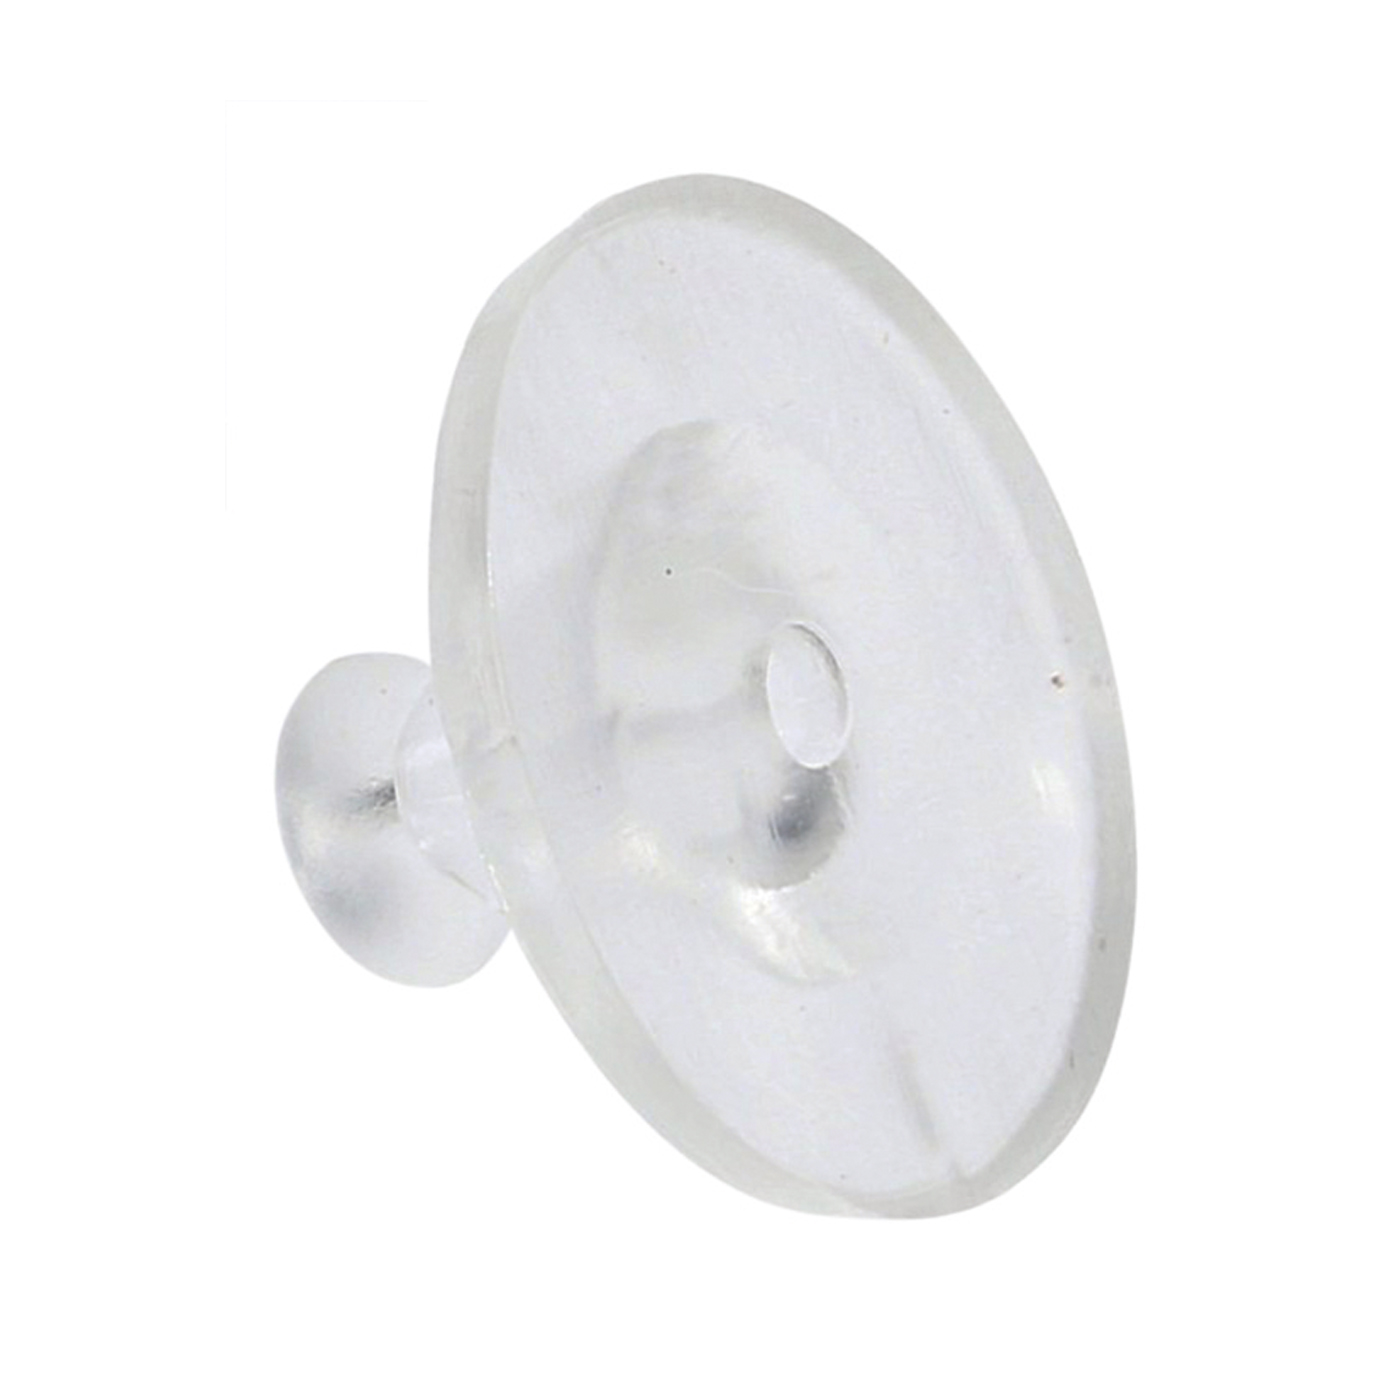 Ohr-Disc, Silikon, transparent, ø 11 mm - 1 Stück